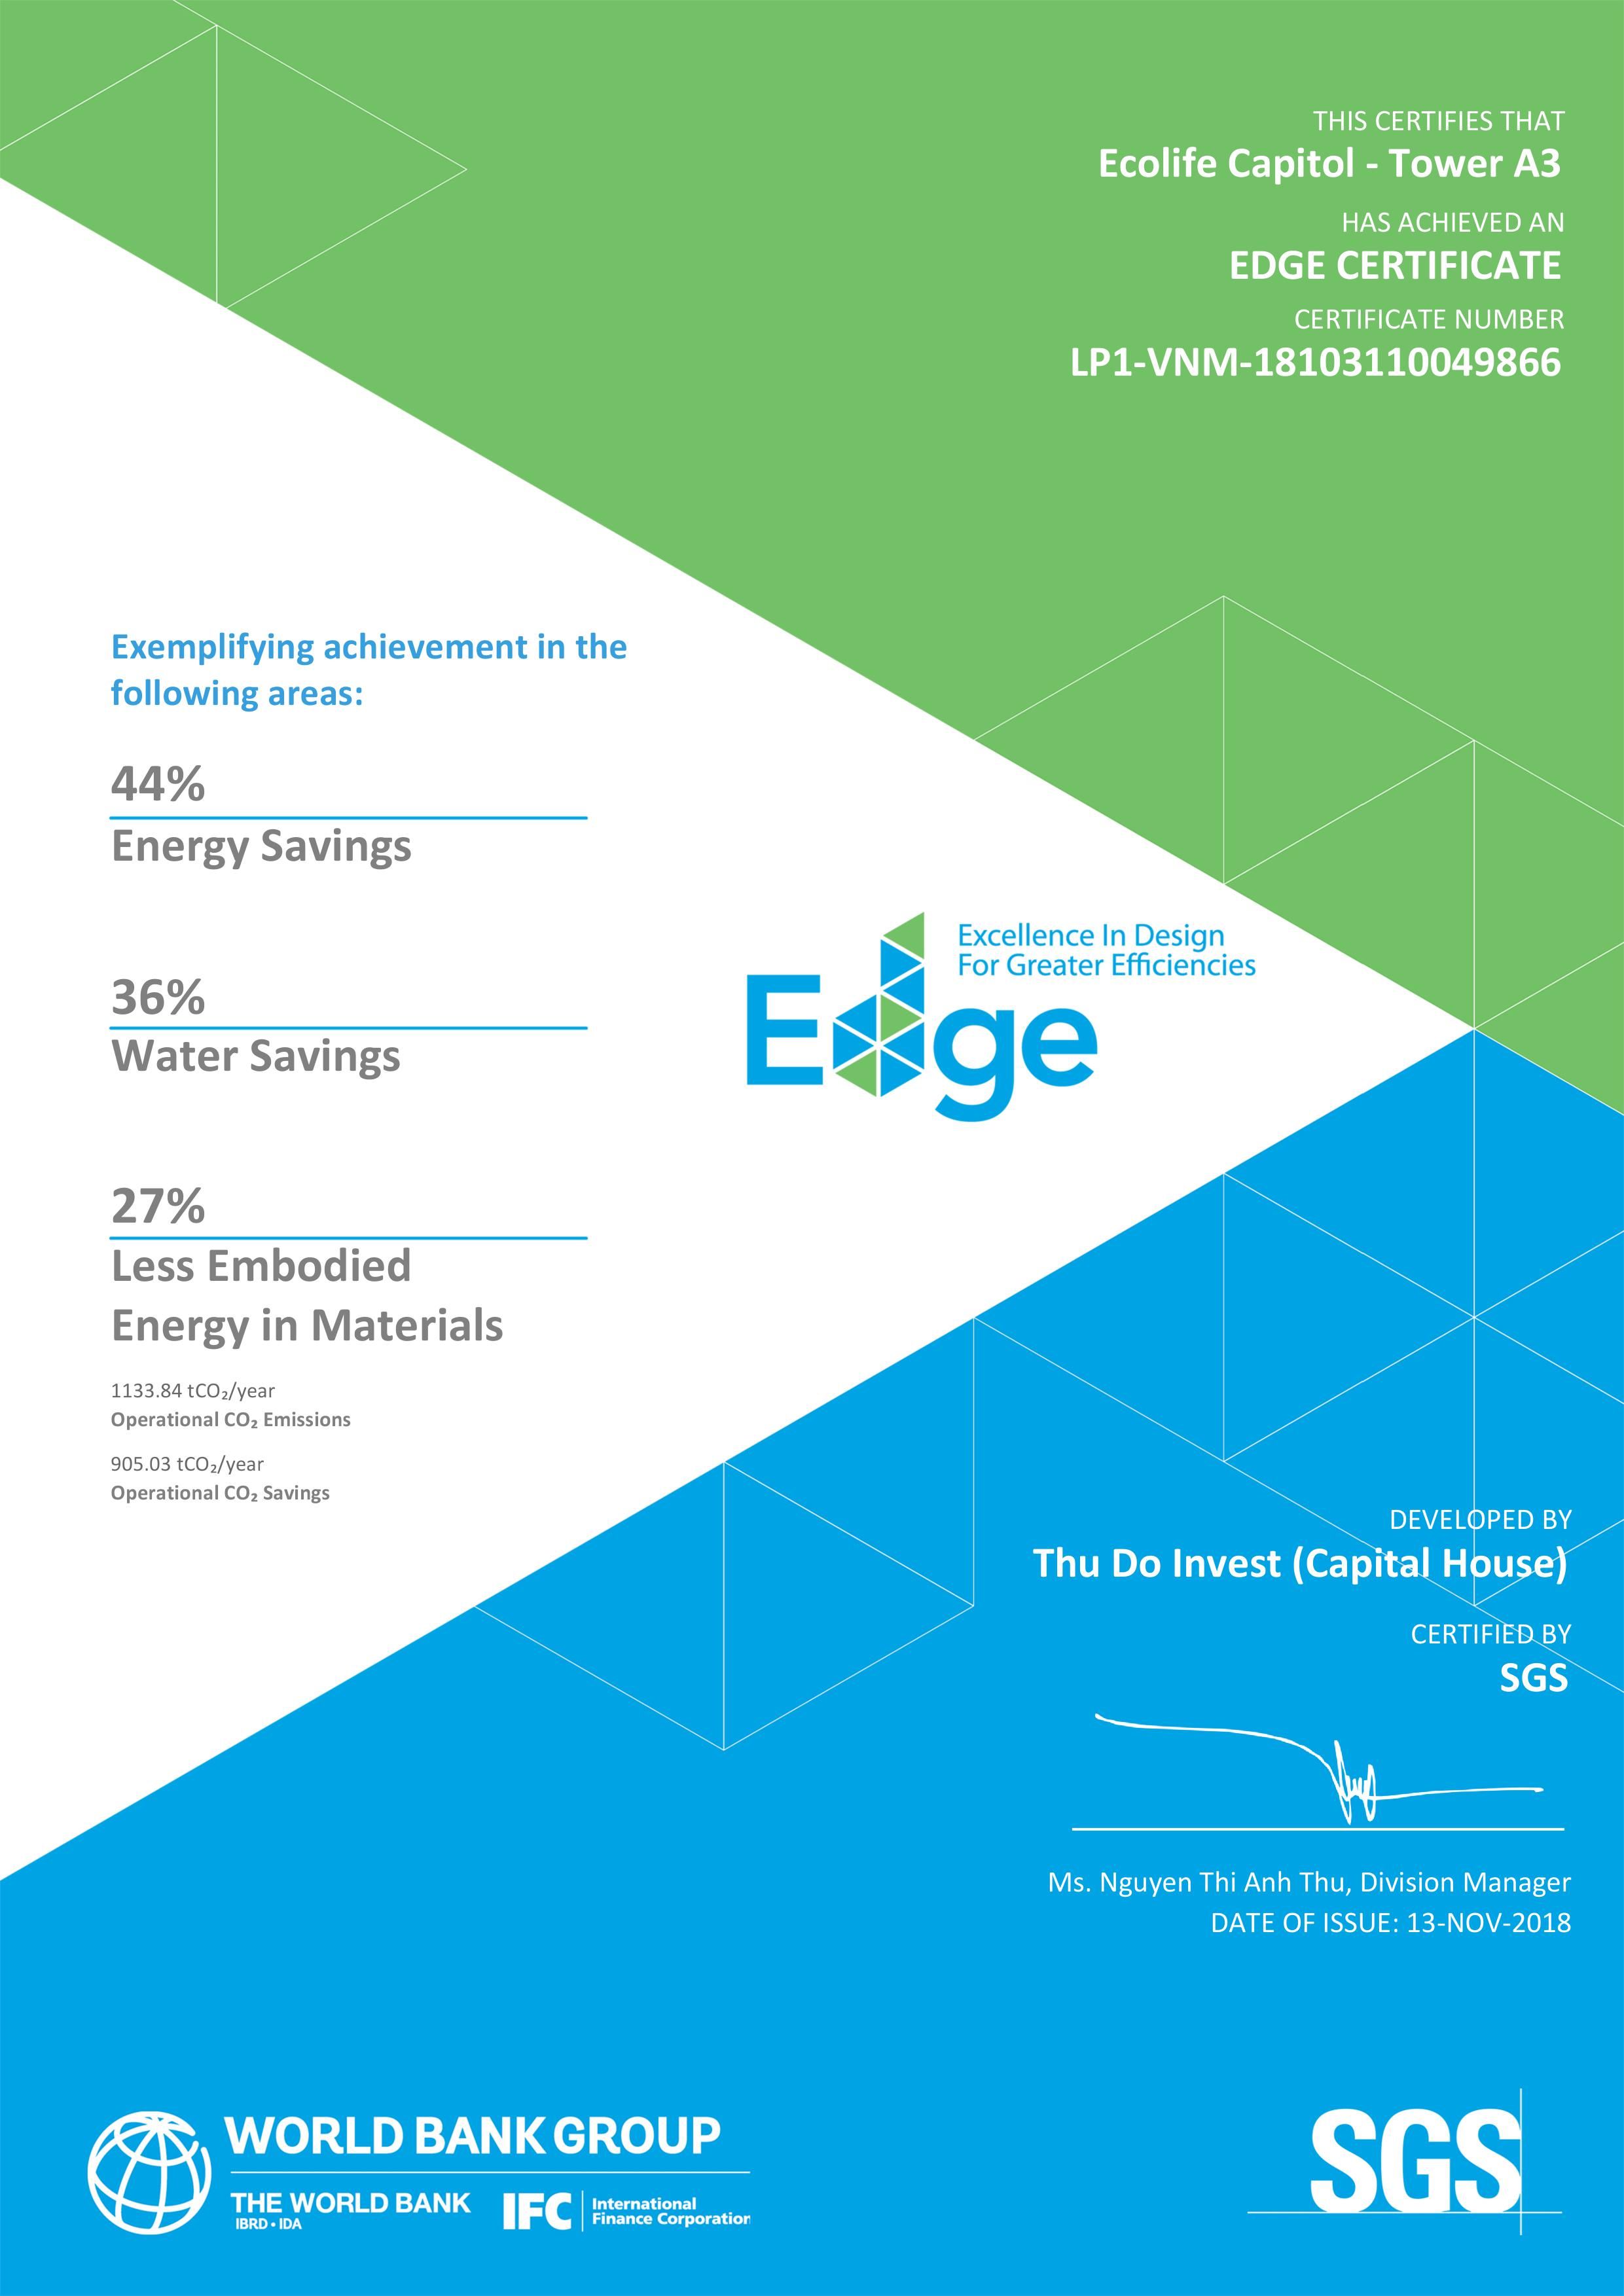 Tòa nhà Văn phòng A3 EcoLife Capitol đạt chứng chỉ Xanh EDGE chính thức, với chỉ số tiết kiệm điện, năng lượng 44%, nước 36% so với tòa nhà Văn phòng thông thường khác